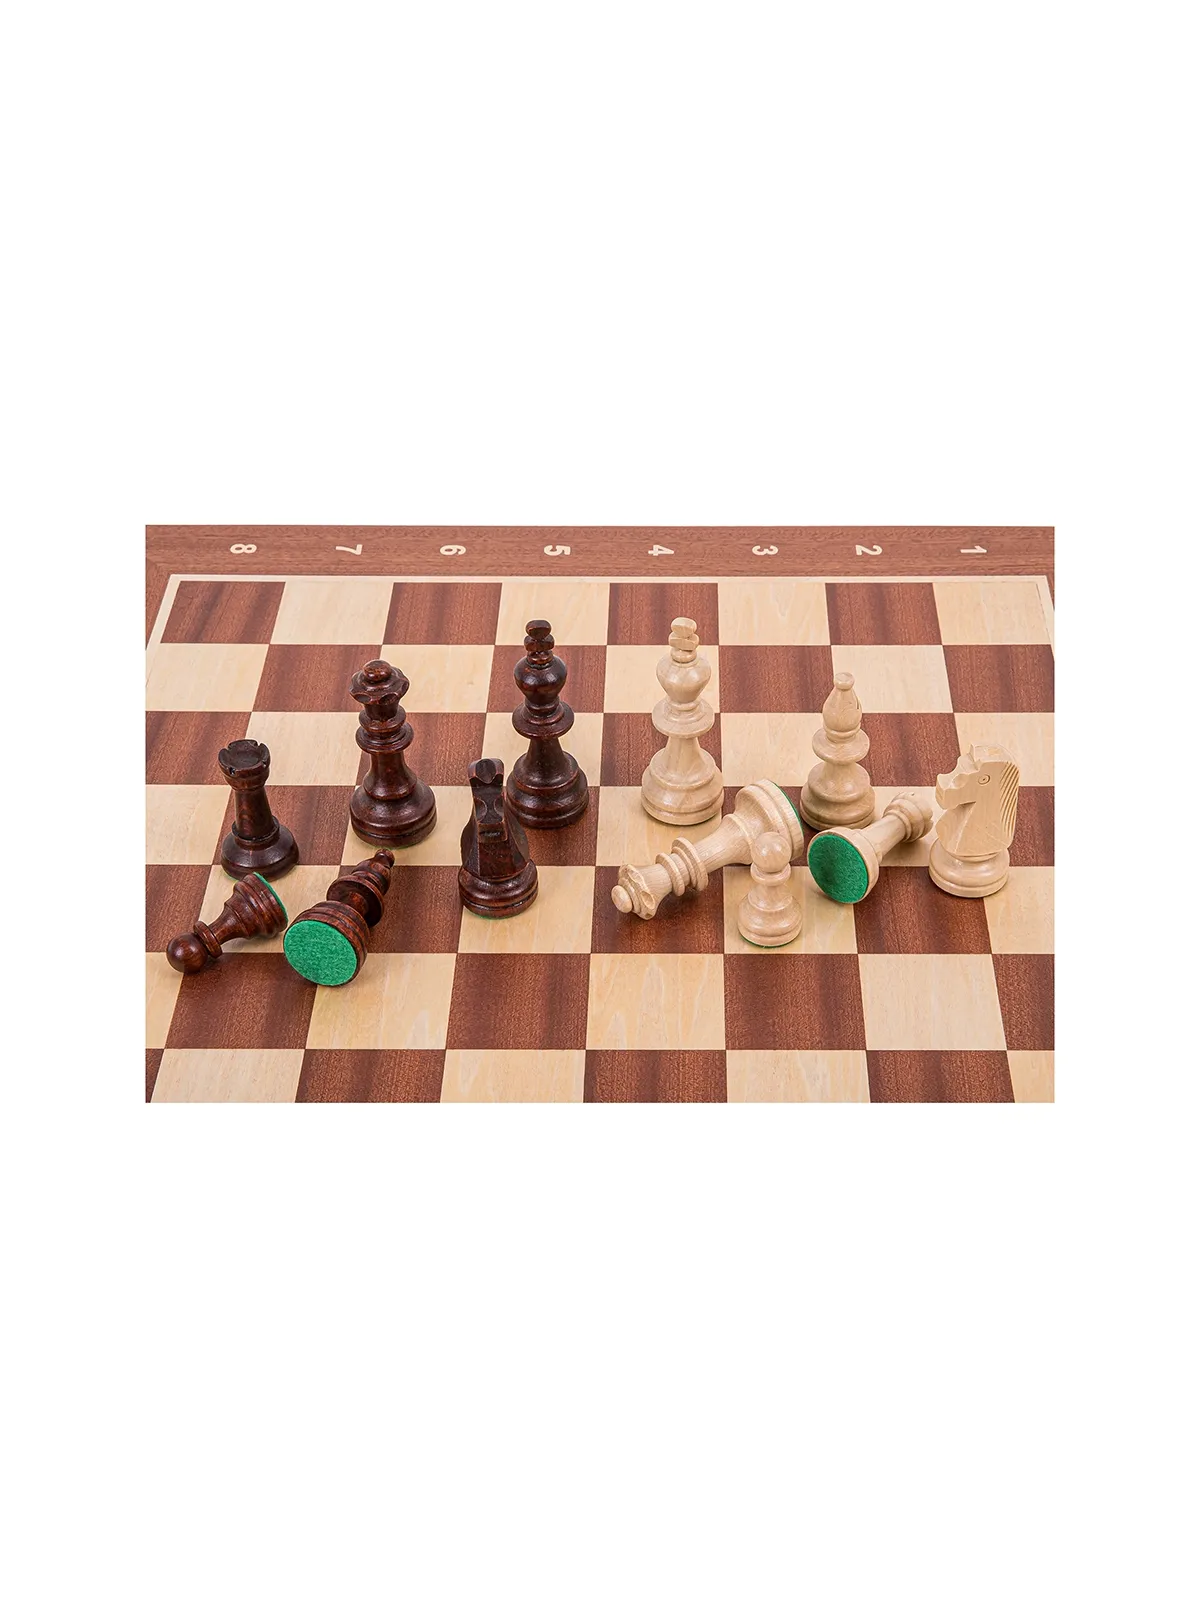 Profi Schach Set Nr 5 - Frankreich Lux